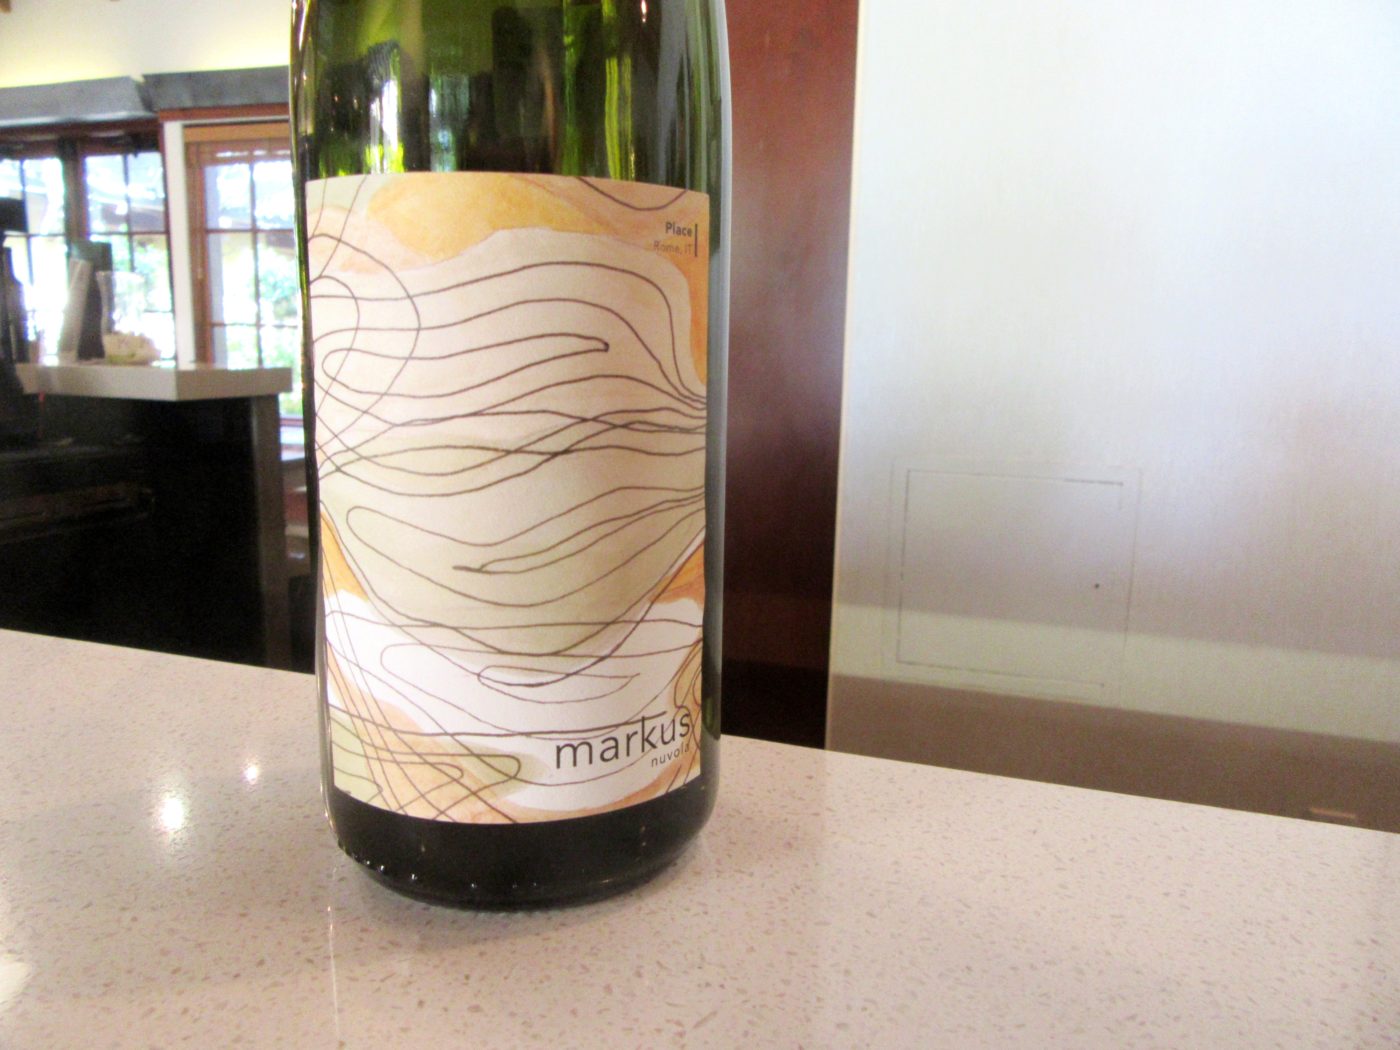 Markus Wine Co., Nuvola Gewürztraminer 2014, Mokelumne Glen Vineyards, Lodi, California, Wine Casual